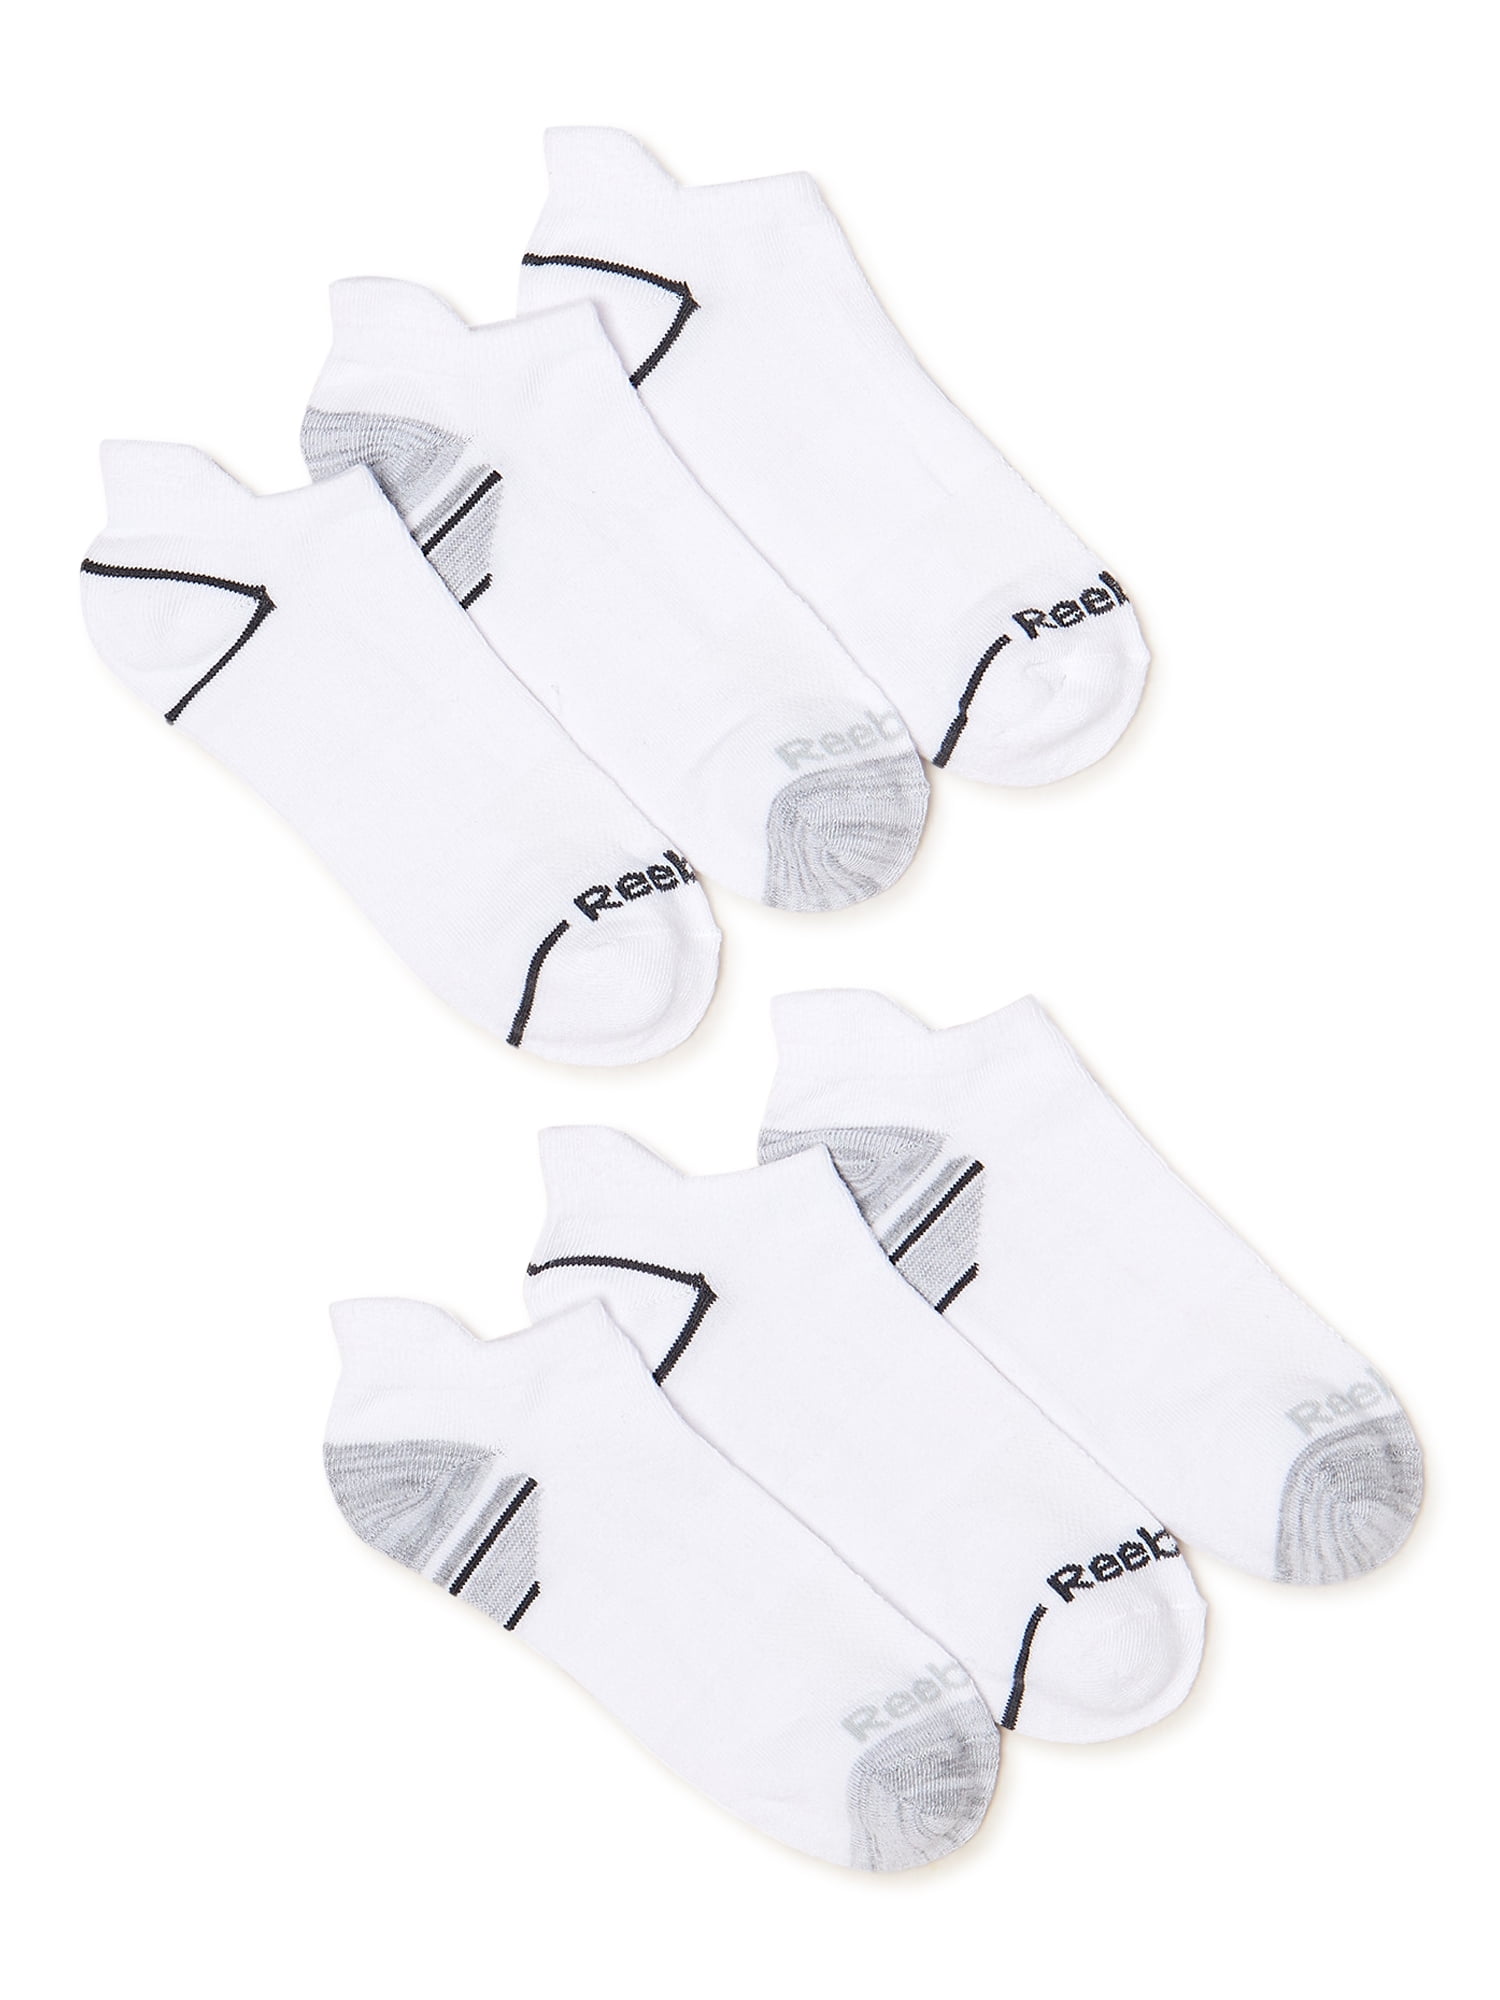 Reebok Men's Pro Series Flatknit Low Cut Socks, 6-Pack